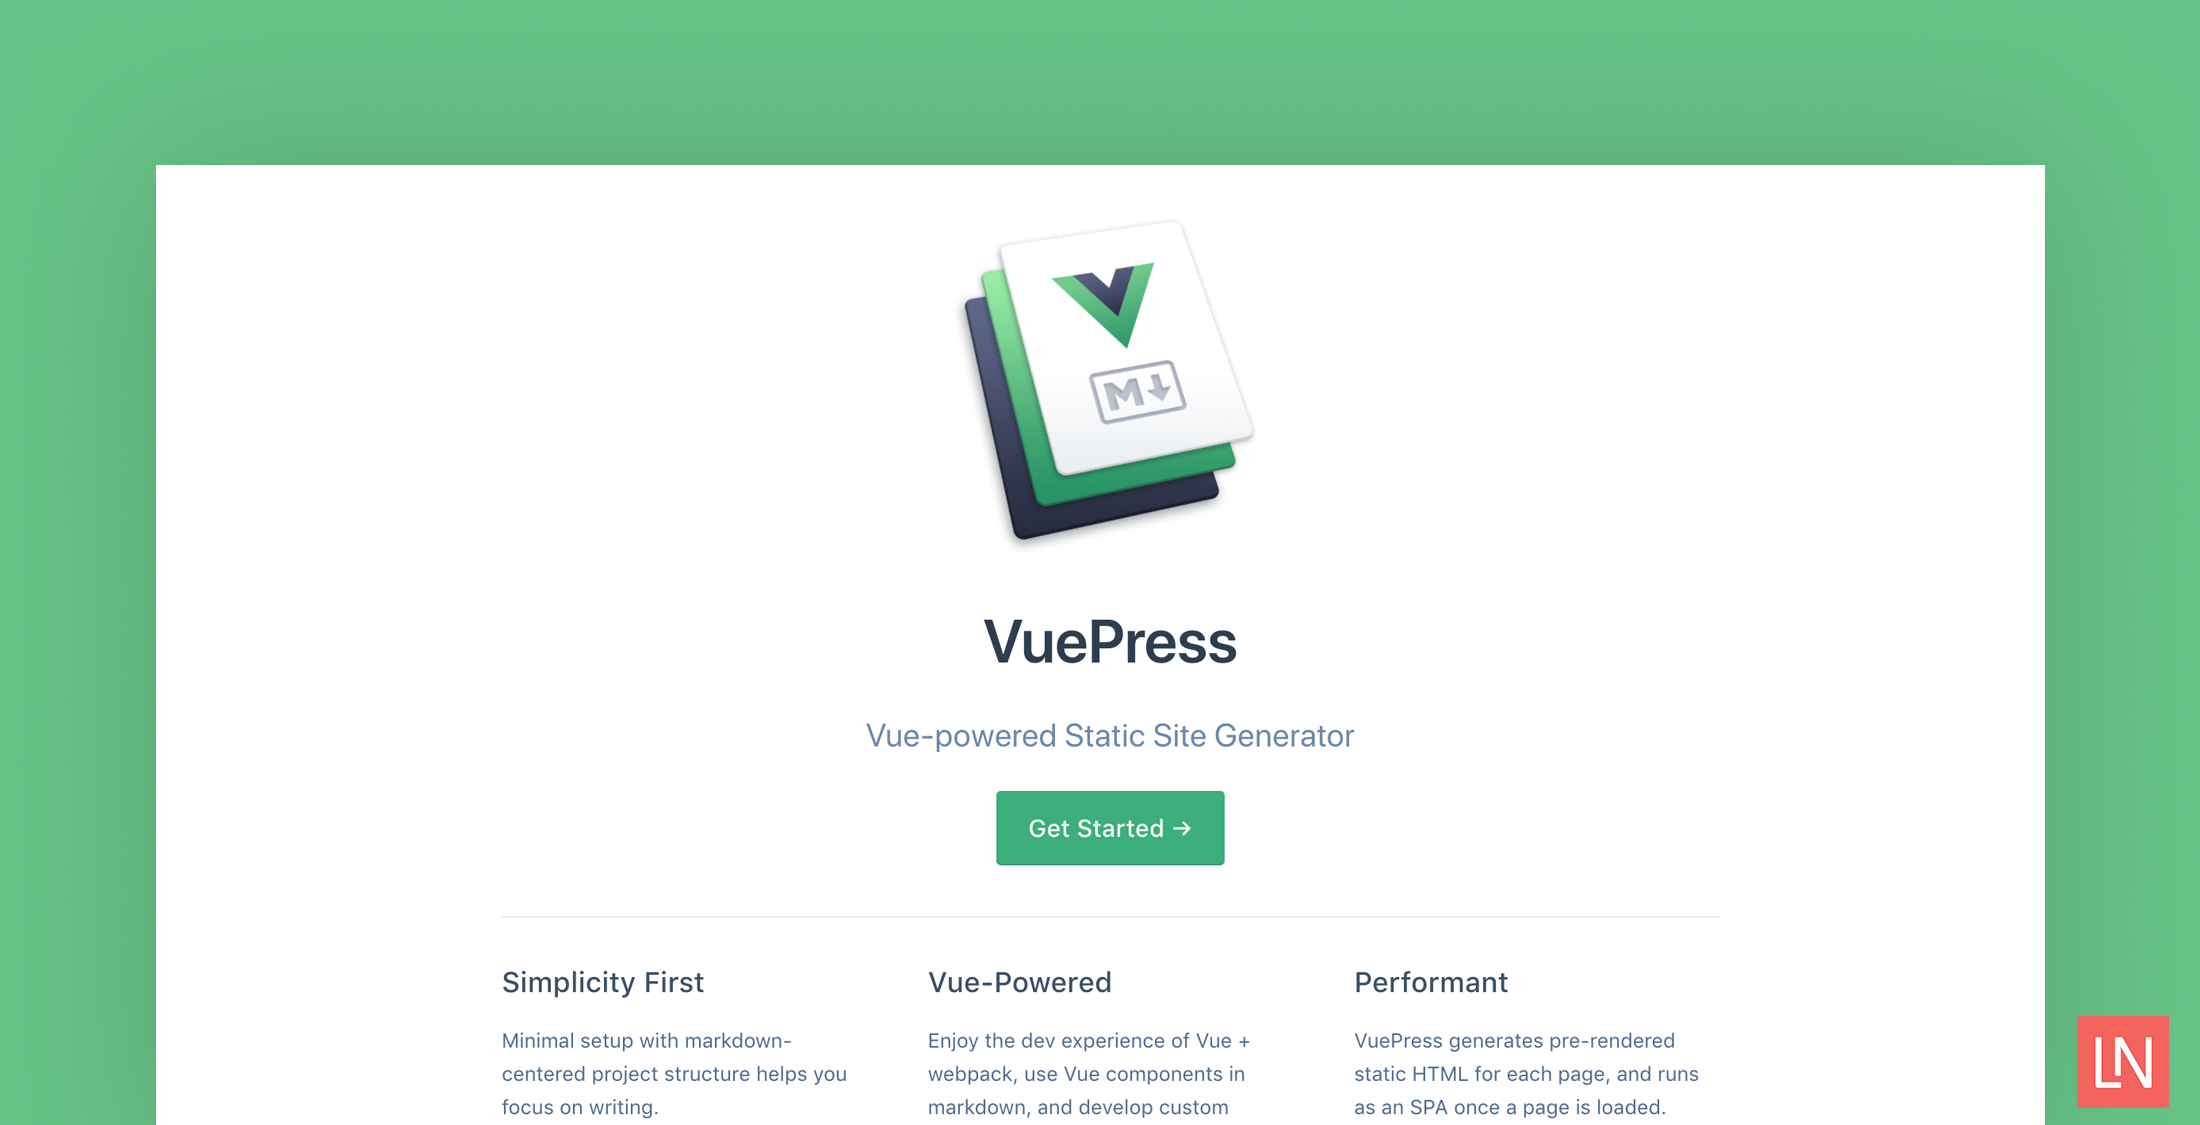 VuePress - VueJS